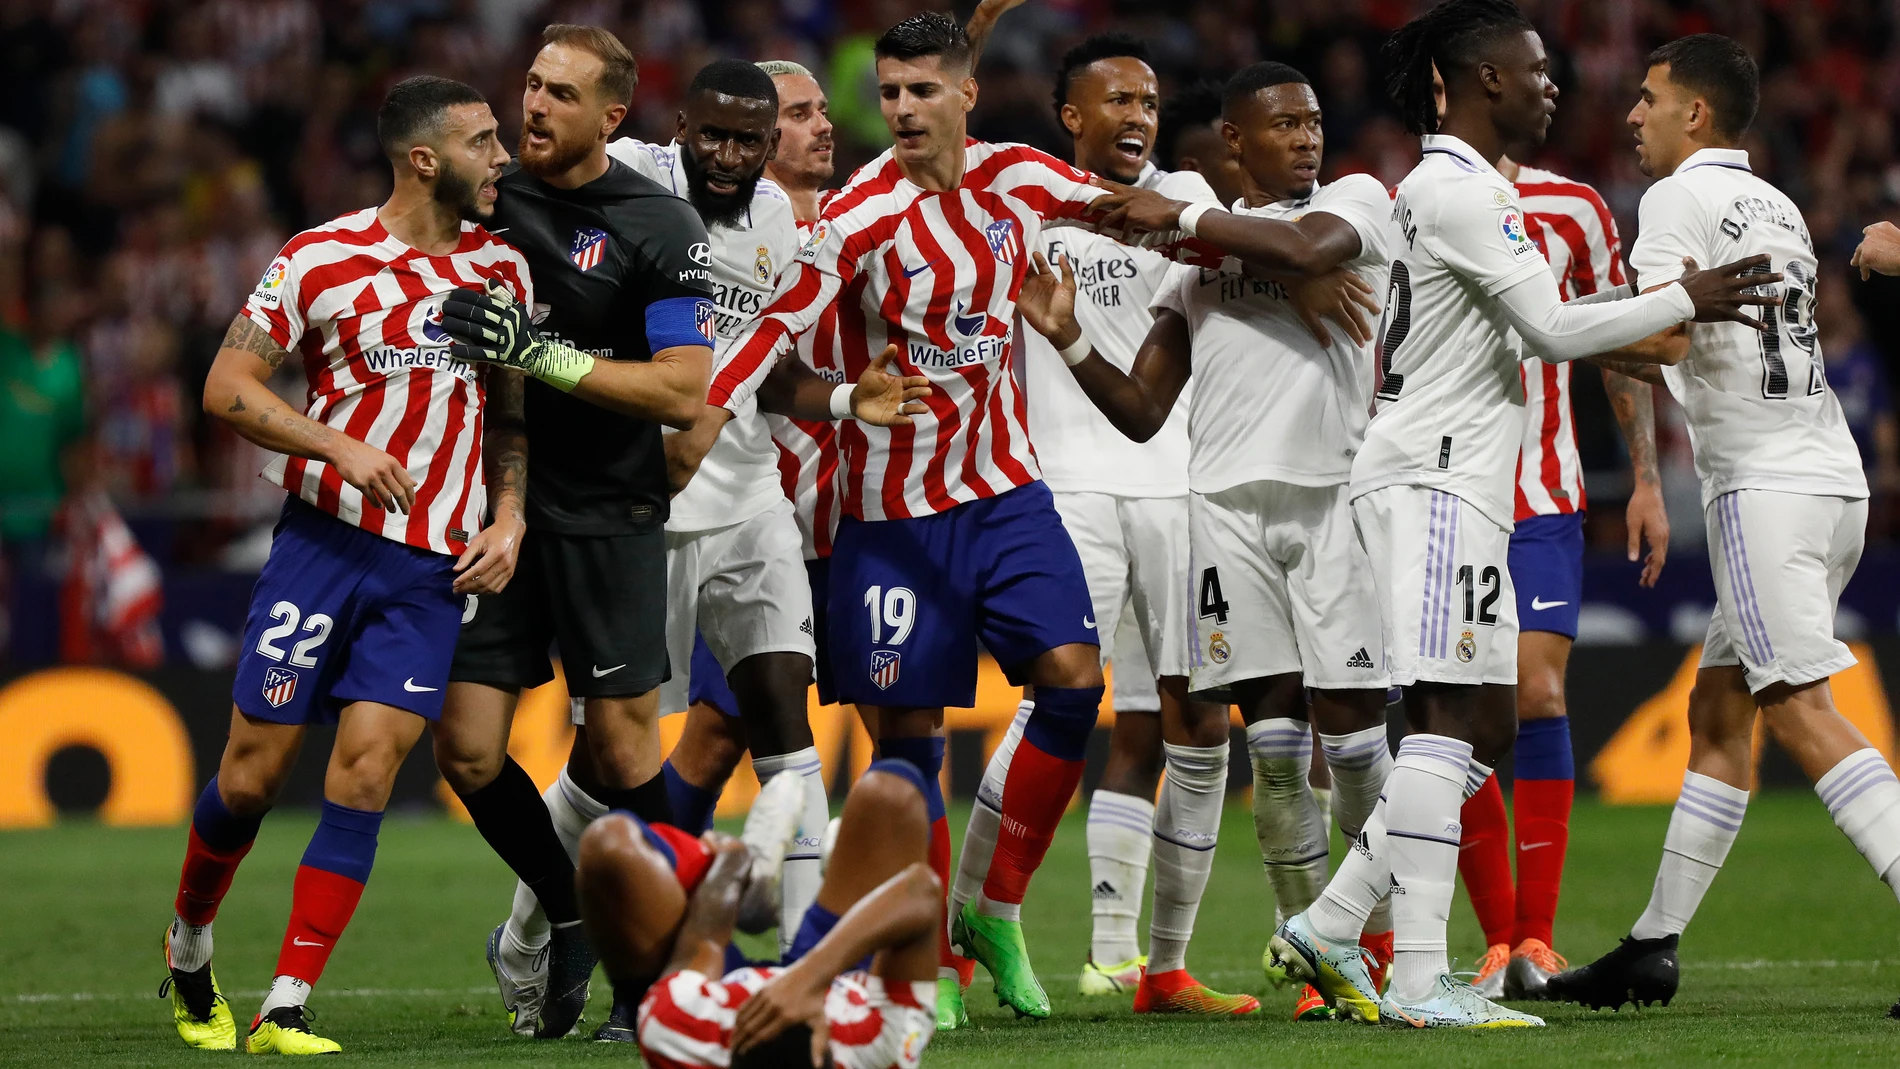 Lío en el Atlético - Real Madrid, en el que Mario Hermoso terminó expulsado